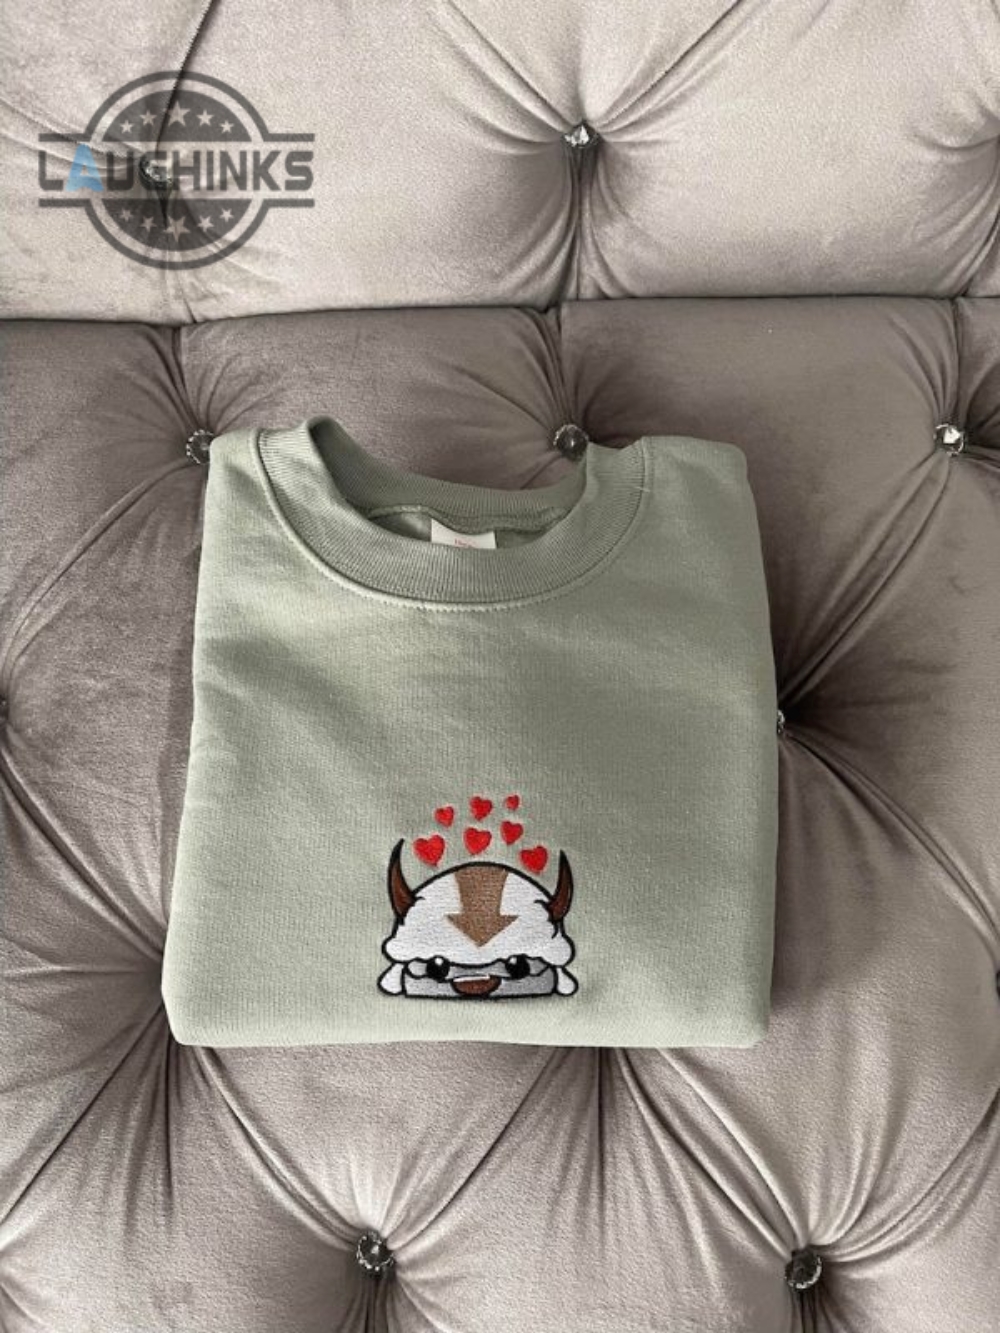 Appa Cloud Biston Embroidered Sweatshirt Embroidery Tshirt Sweatshirt Hoodie Gift